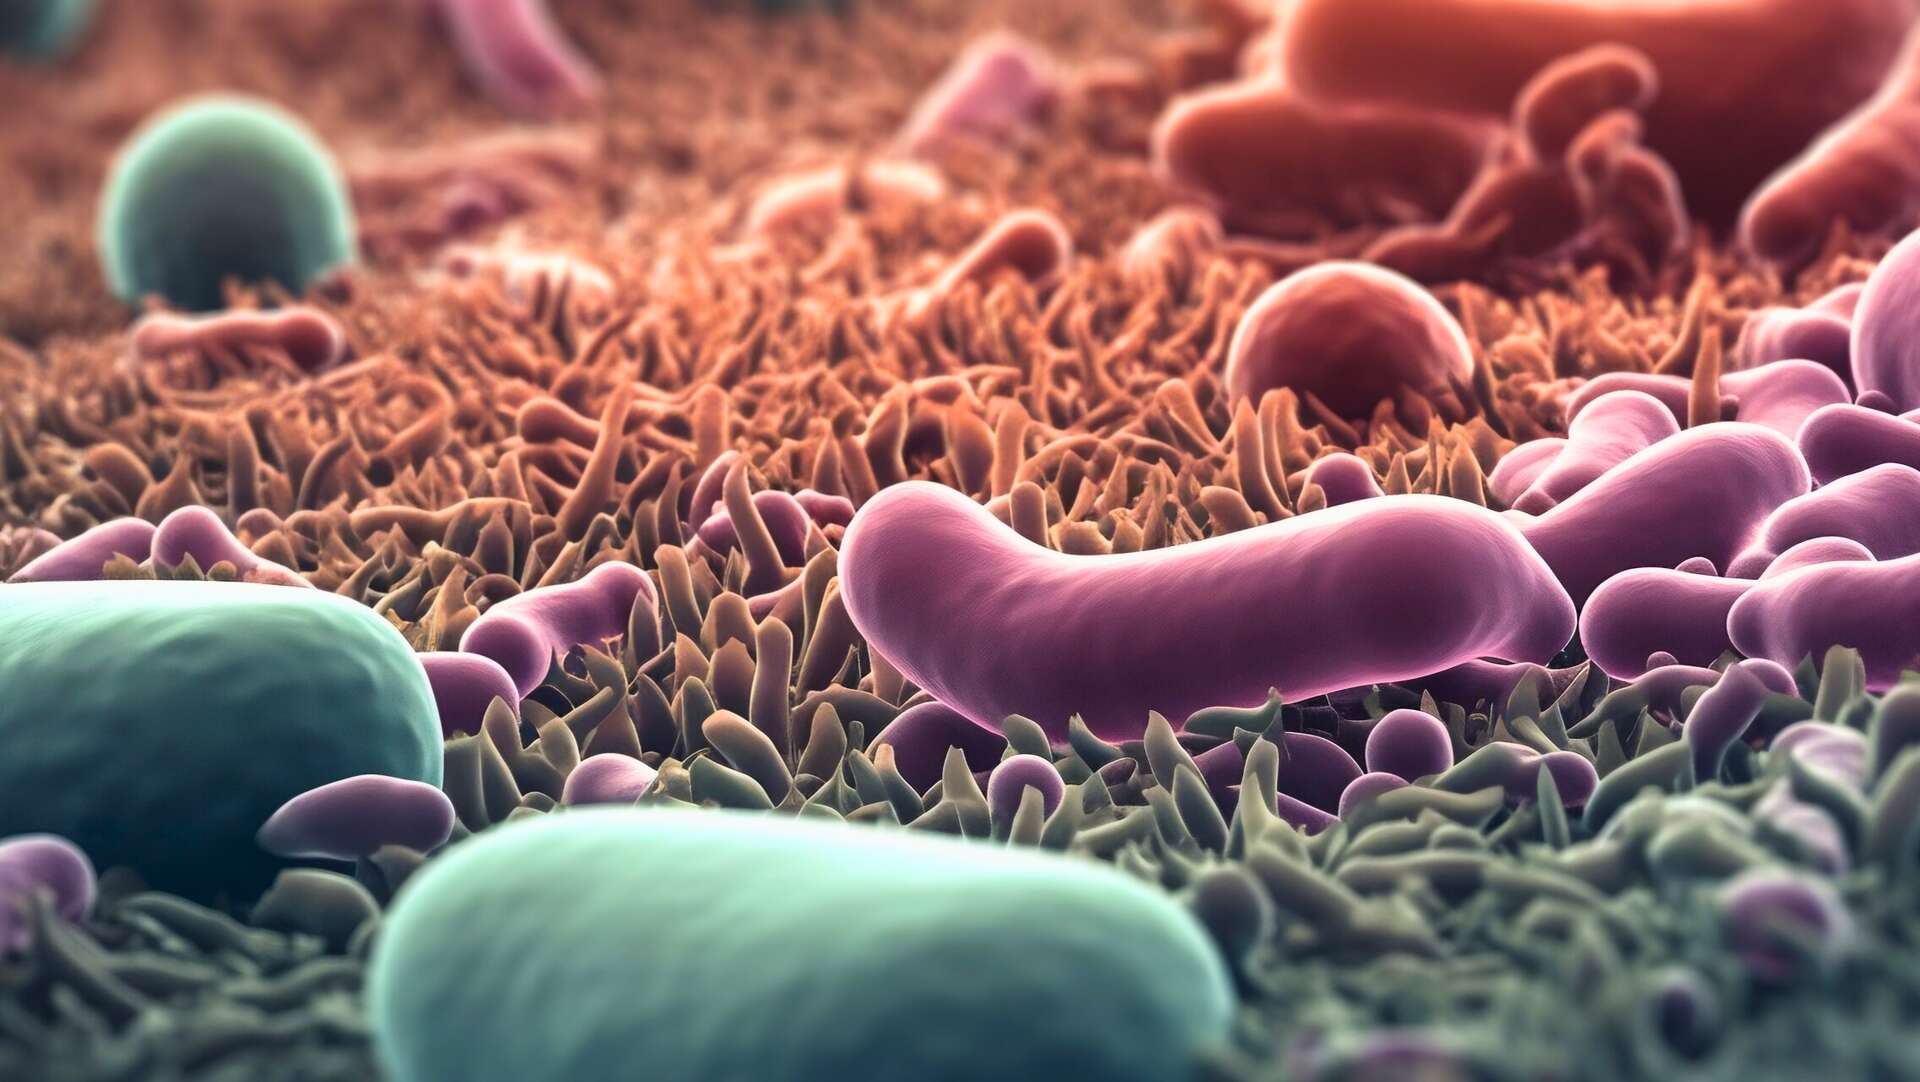 Le microbiote serait en partie responsable de la compétition entre ces espèces